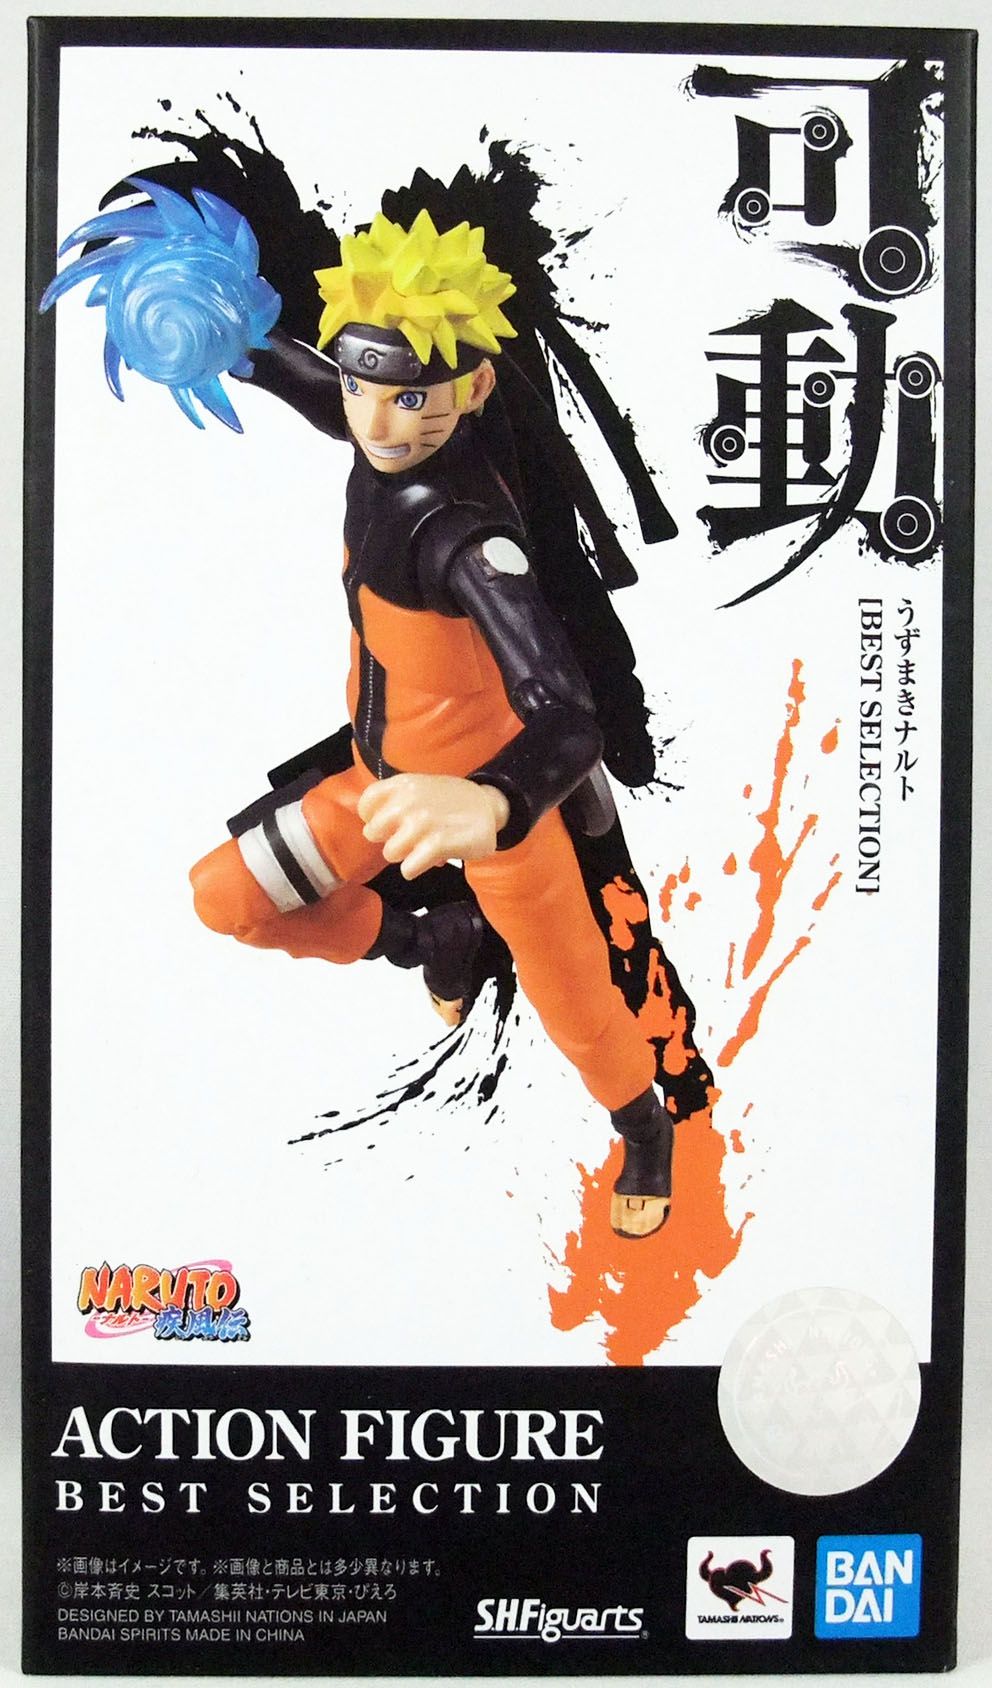 Figurine Naruto Shippuden - S.H. Figuarts - Naruto Uzumaki